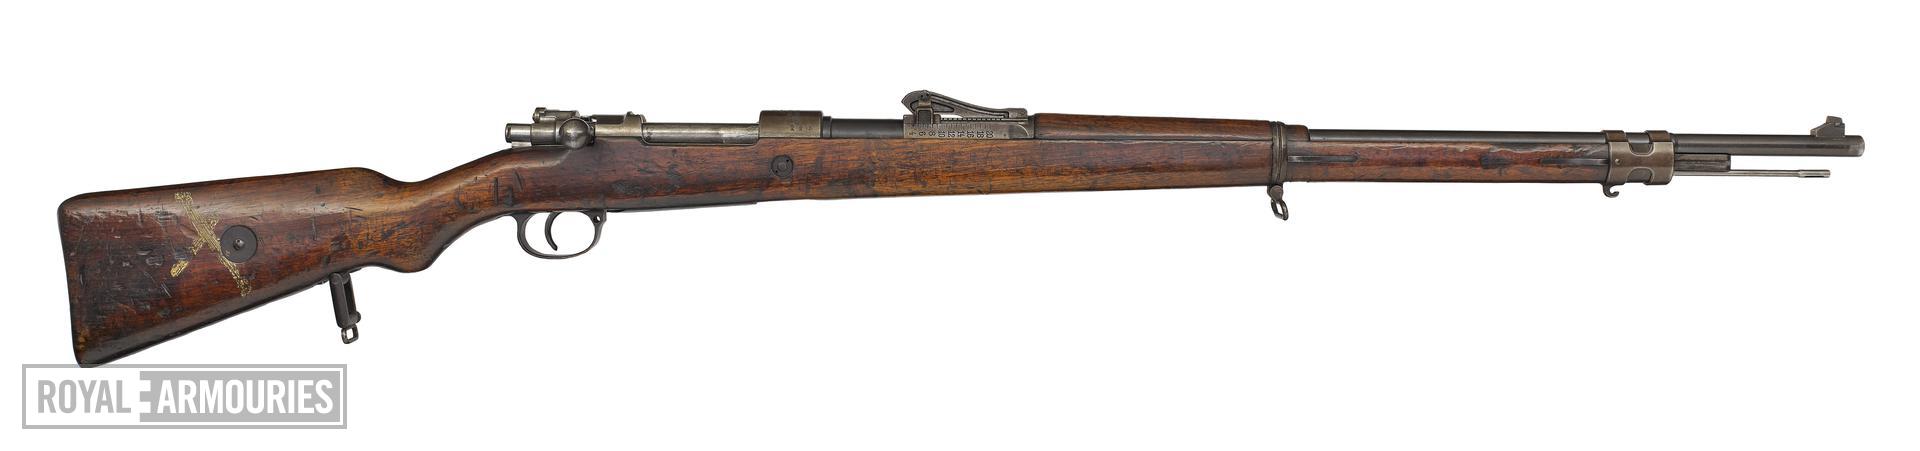 Centrefire bolt-action rifle - Mauser Gewehr 98 (about 1916)(1).jpg